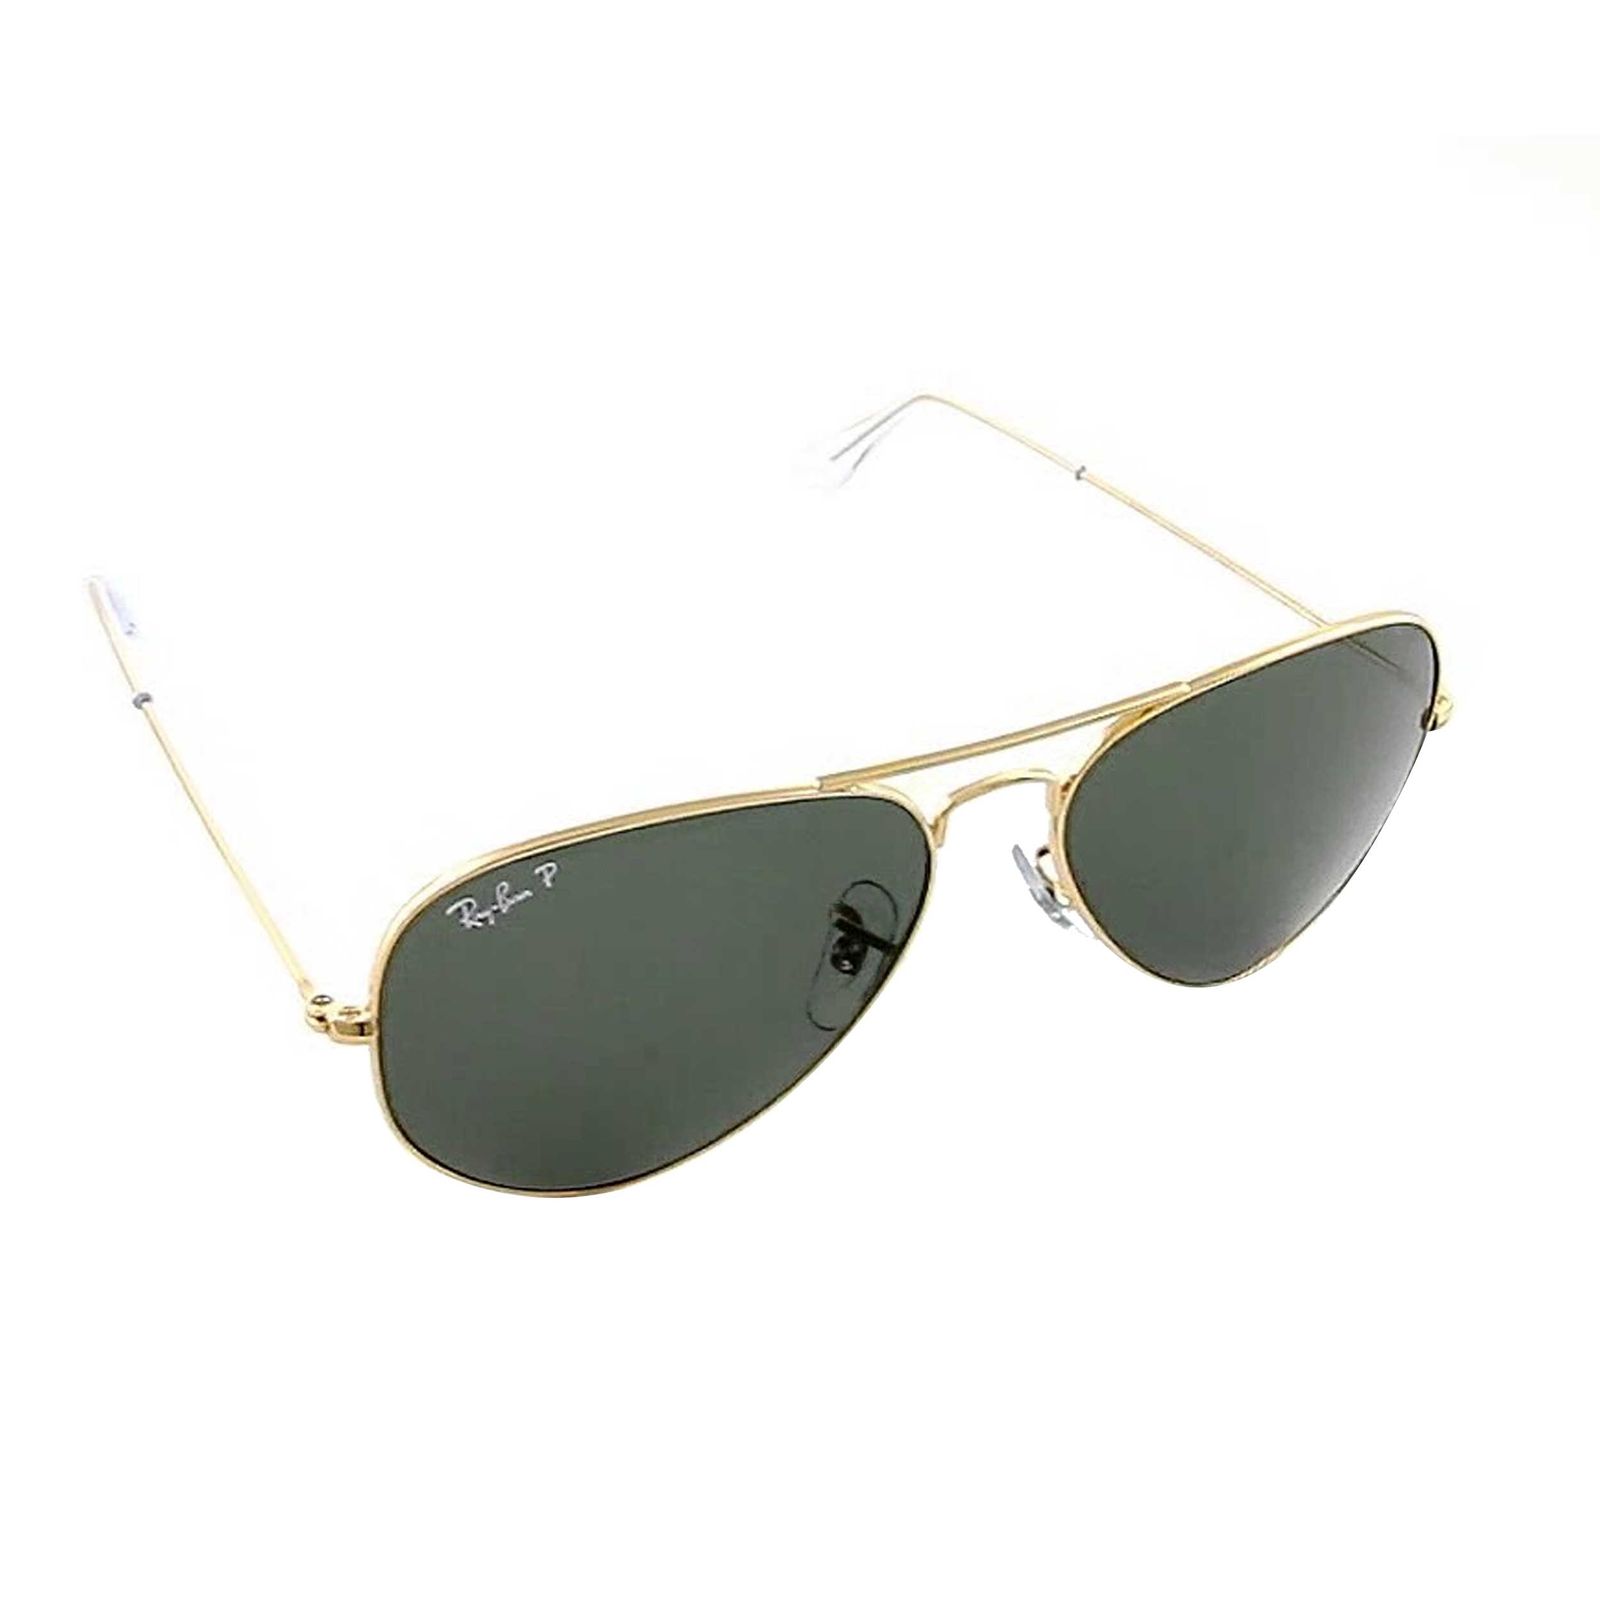 عینک آفتابی ری بن مدل 3025-001/58-58 -  - 5